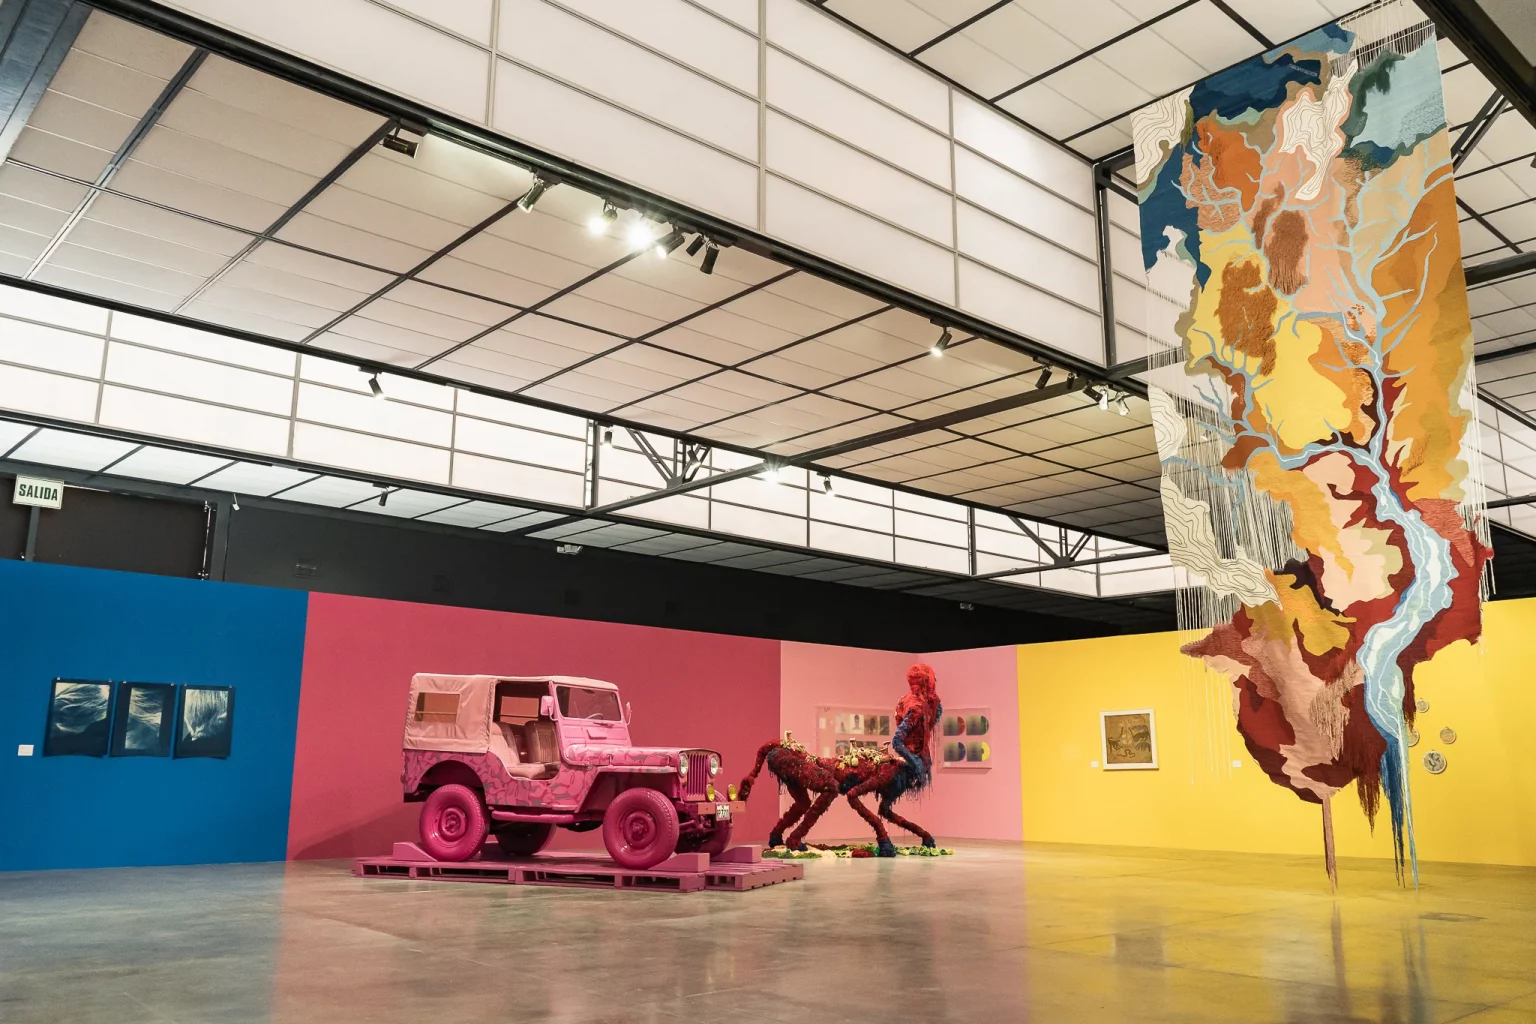 ‘Color. El conocimiento de lo invisible’ en el Museo de Arte Contemporáneo de Lima (MAC)